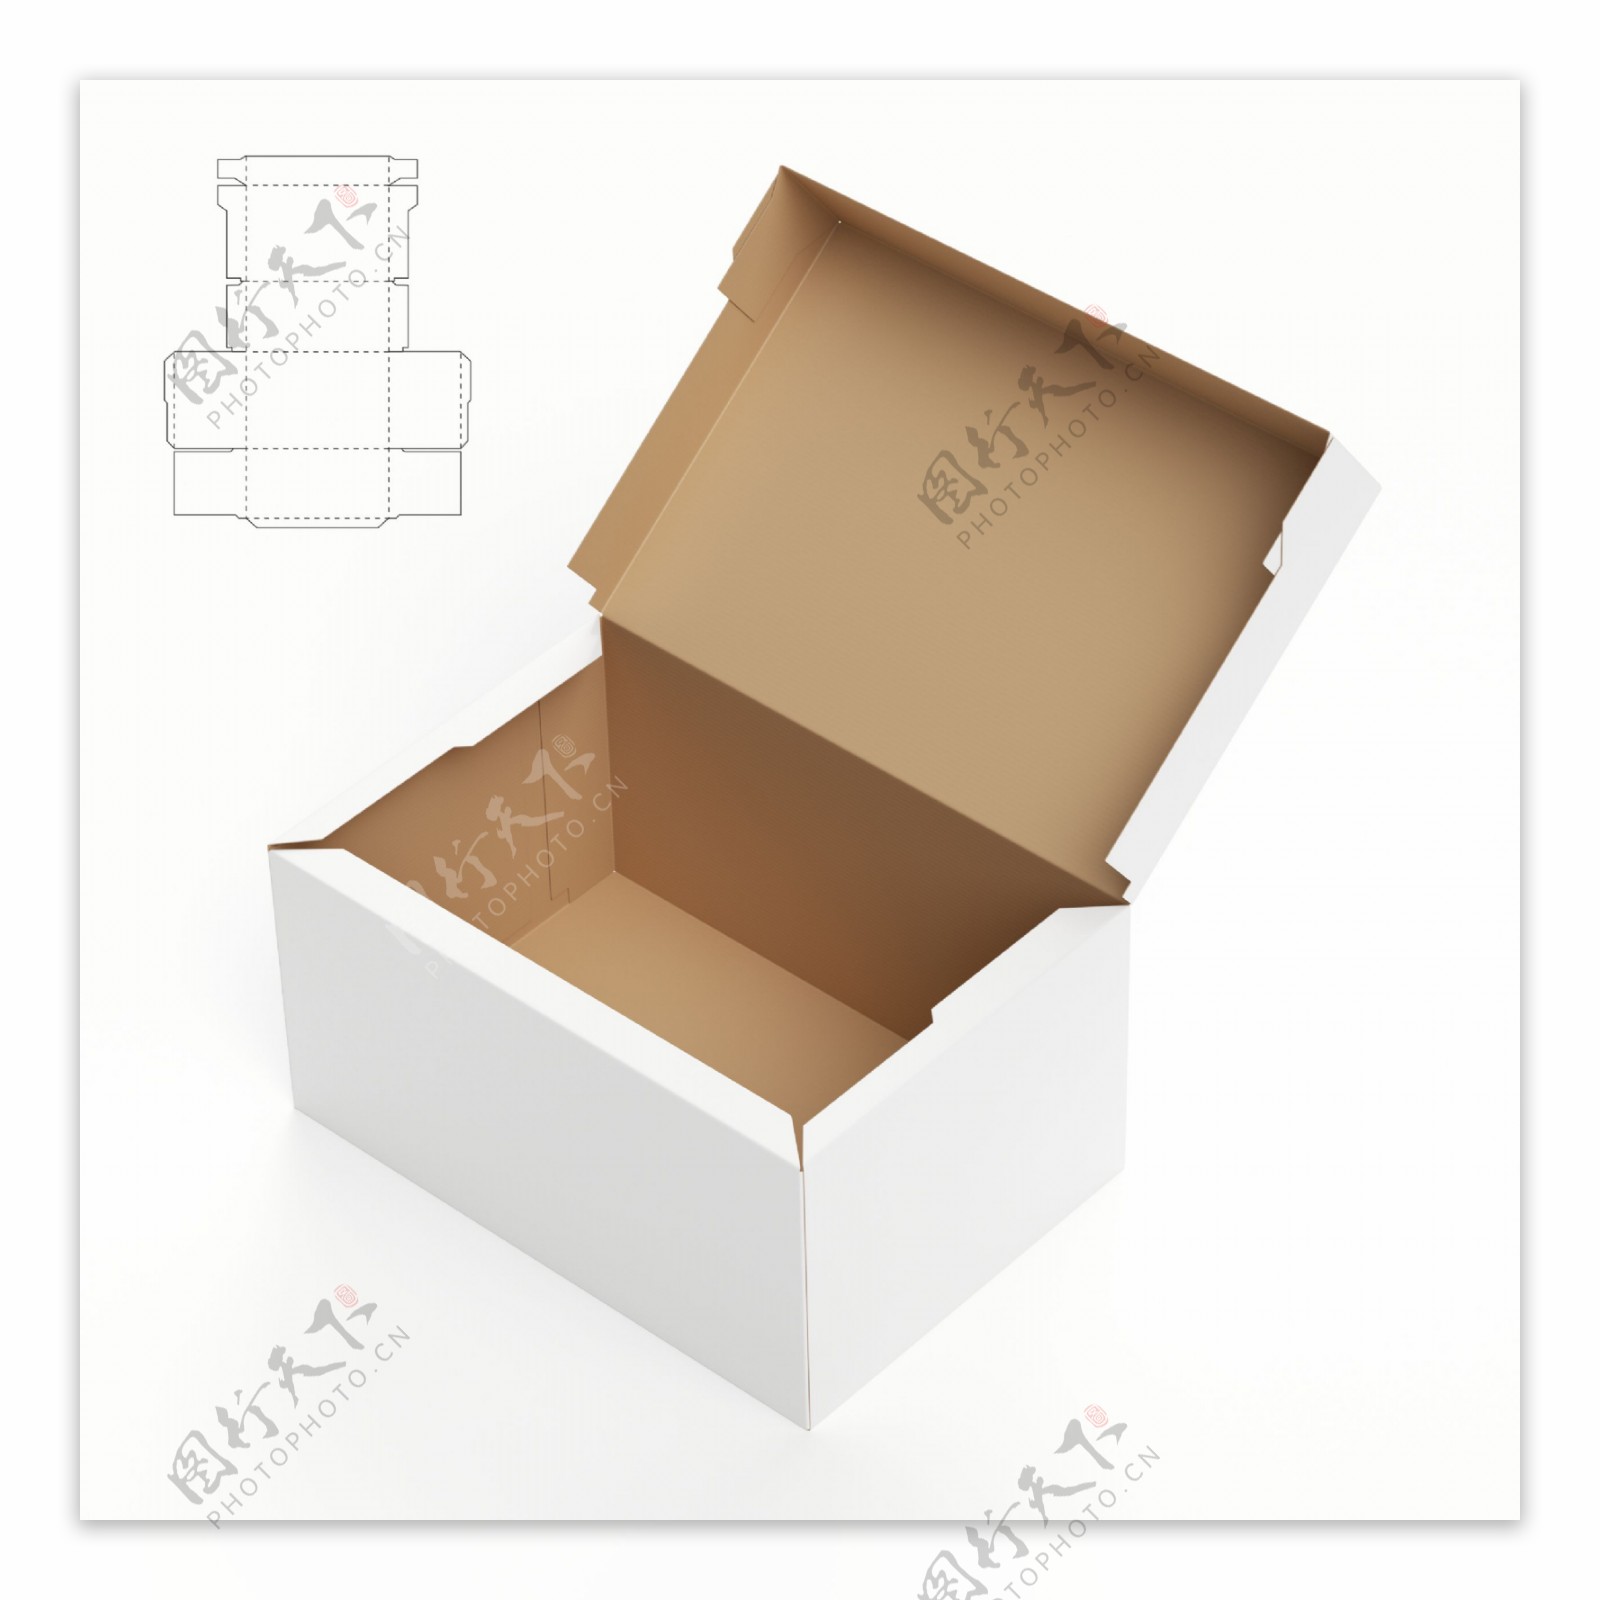 盒子效果图与平面图